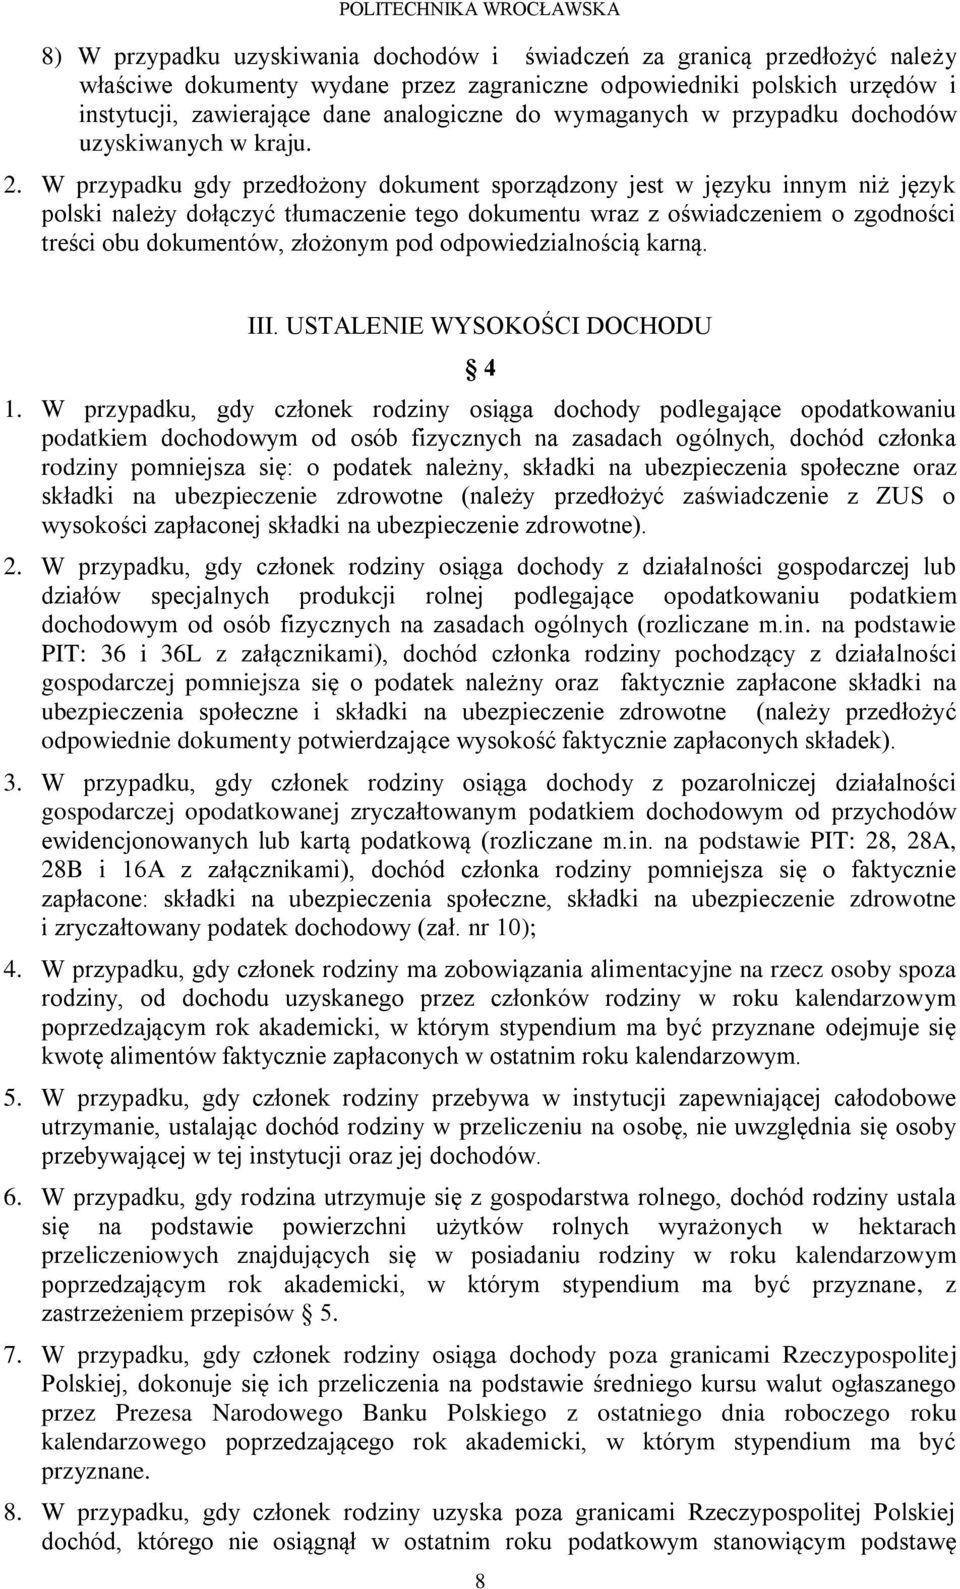 W przypadku gdy przedłożony dokument sporządzony jest w języku innym niż język polski należy dołączyć tłumaczenie tego dokumentu wraz z oświadczeniem o zgodności treści obu dokumentów, złożonym pod